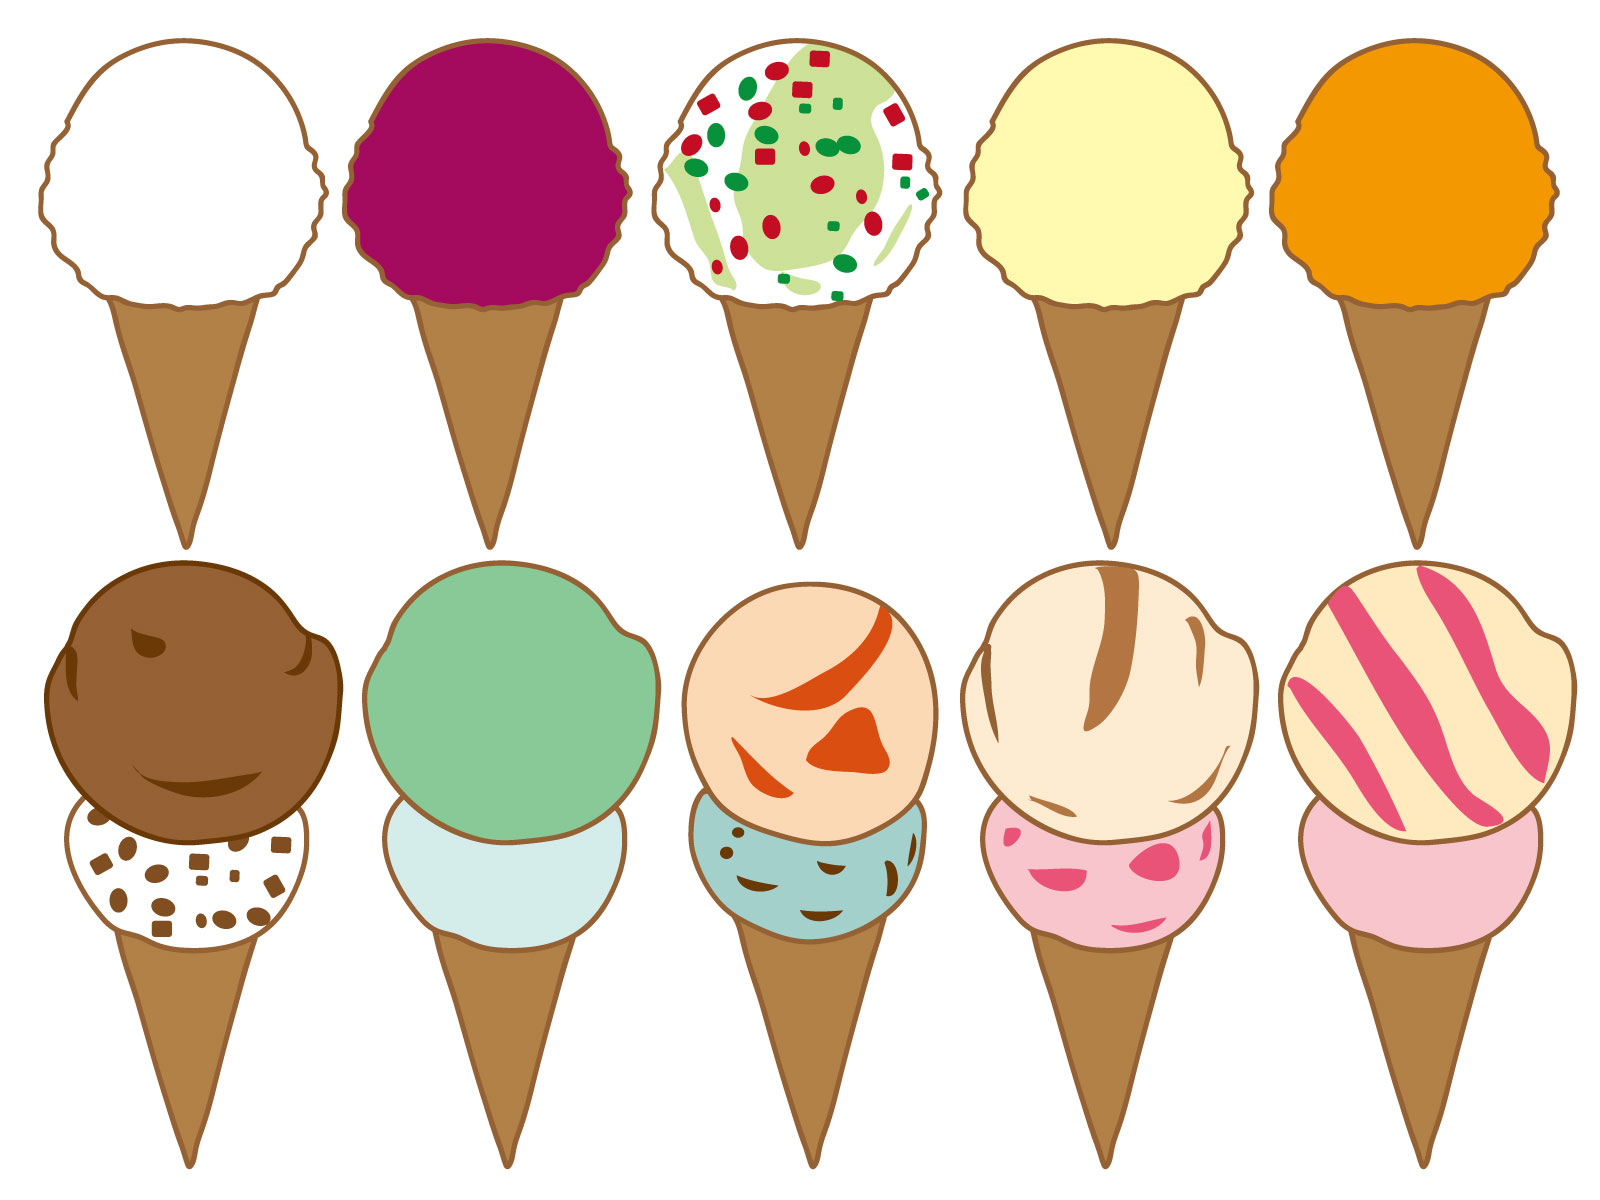 31アイスクリーム初心者のための注文方法 値段 カロリーなど